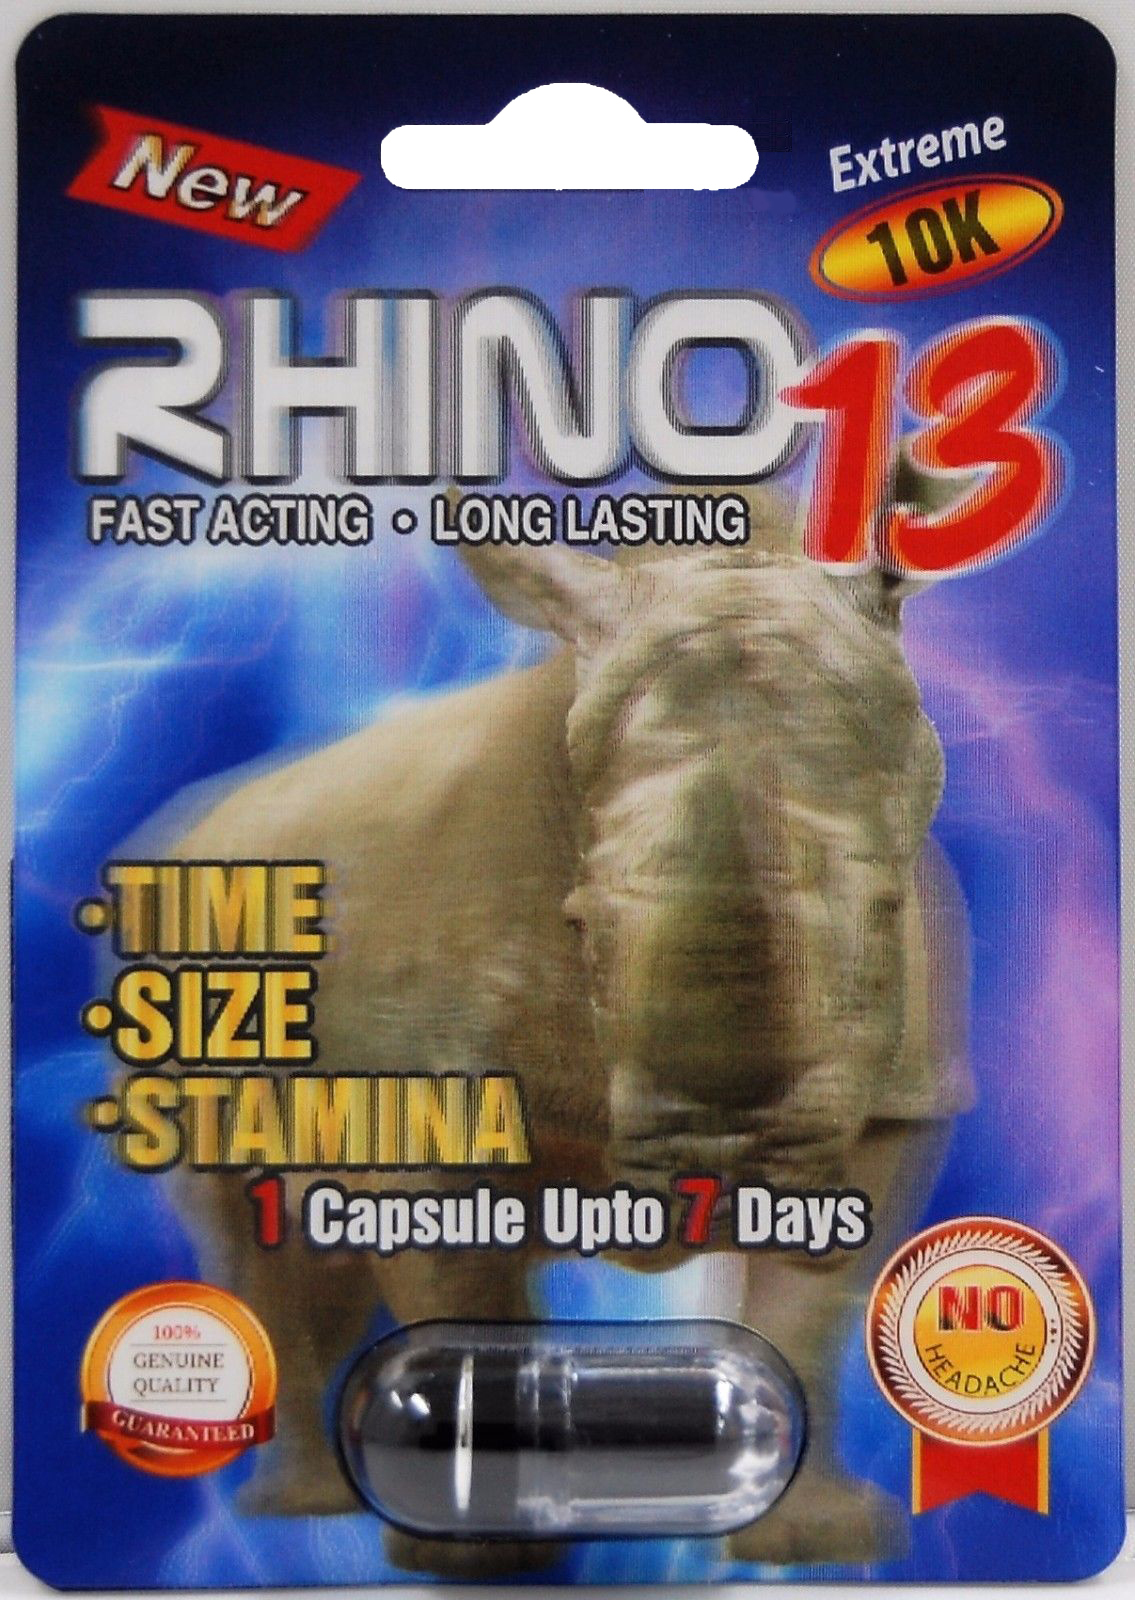 rhino 7 platinum 75000 2 pill pack